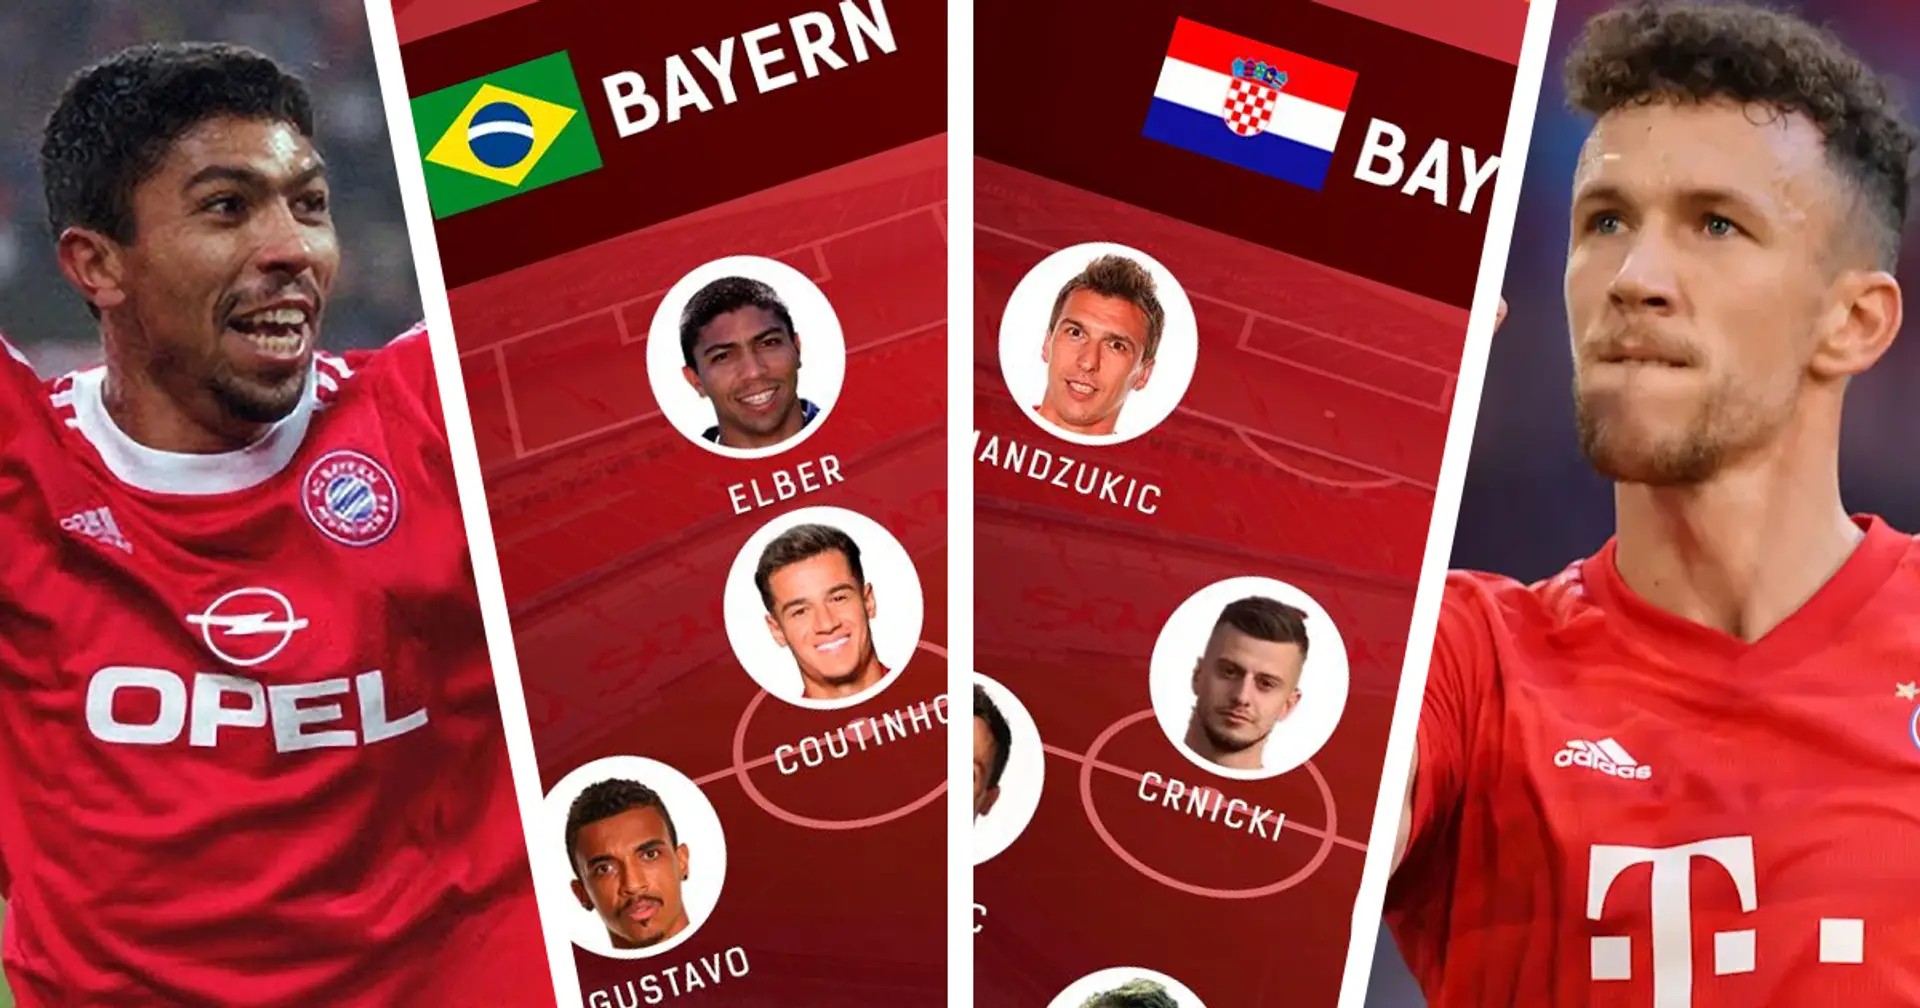 Brasilien, Kroatien und 2 weitere Ausländer-Teams des FC Bayern: Wer gewinnt?